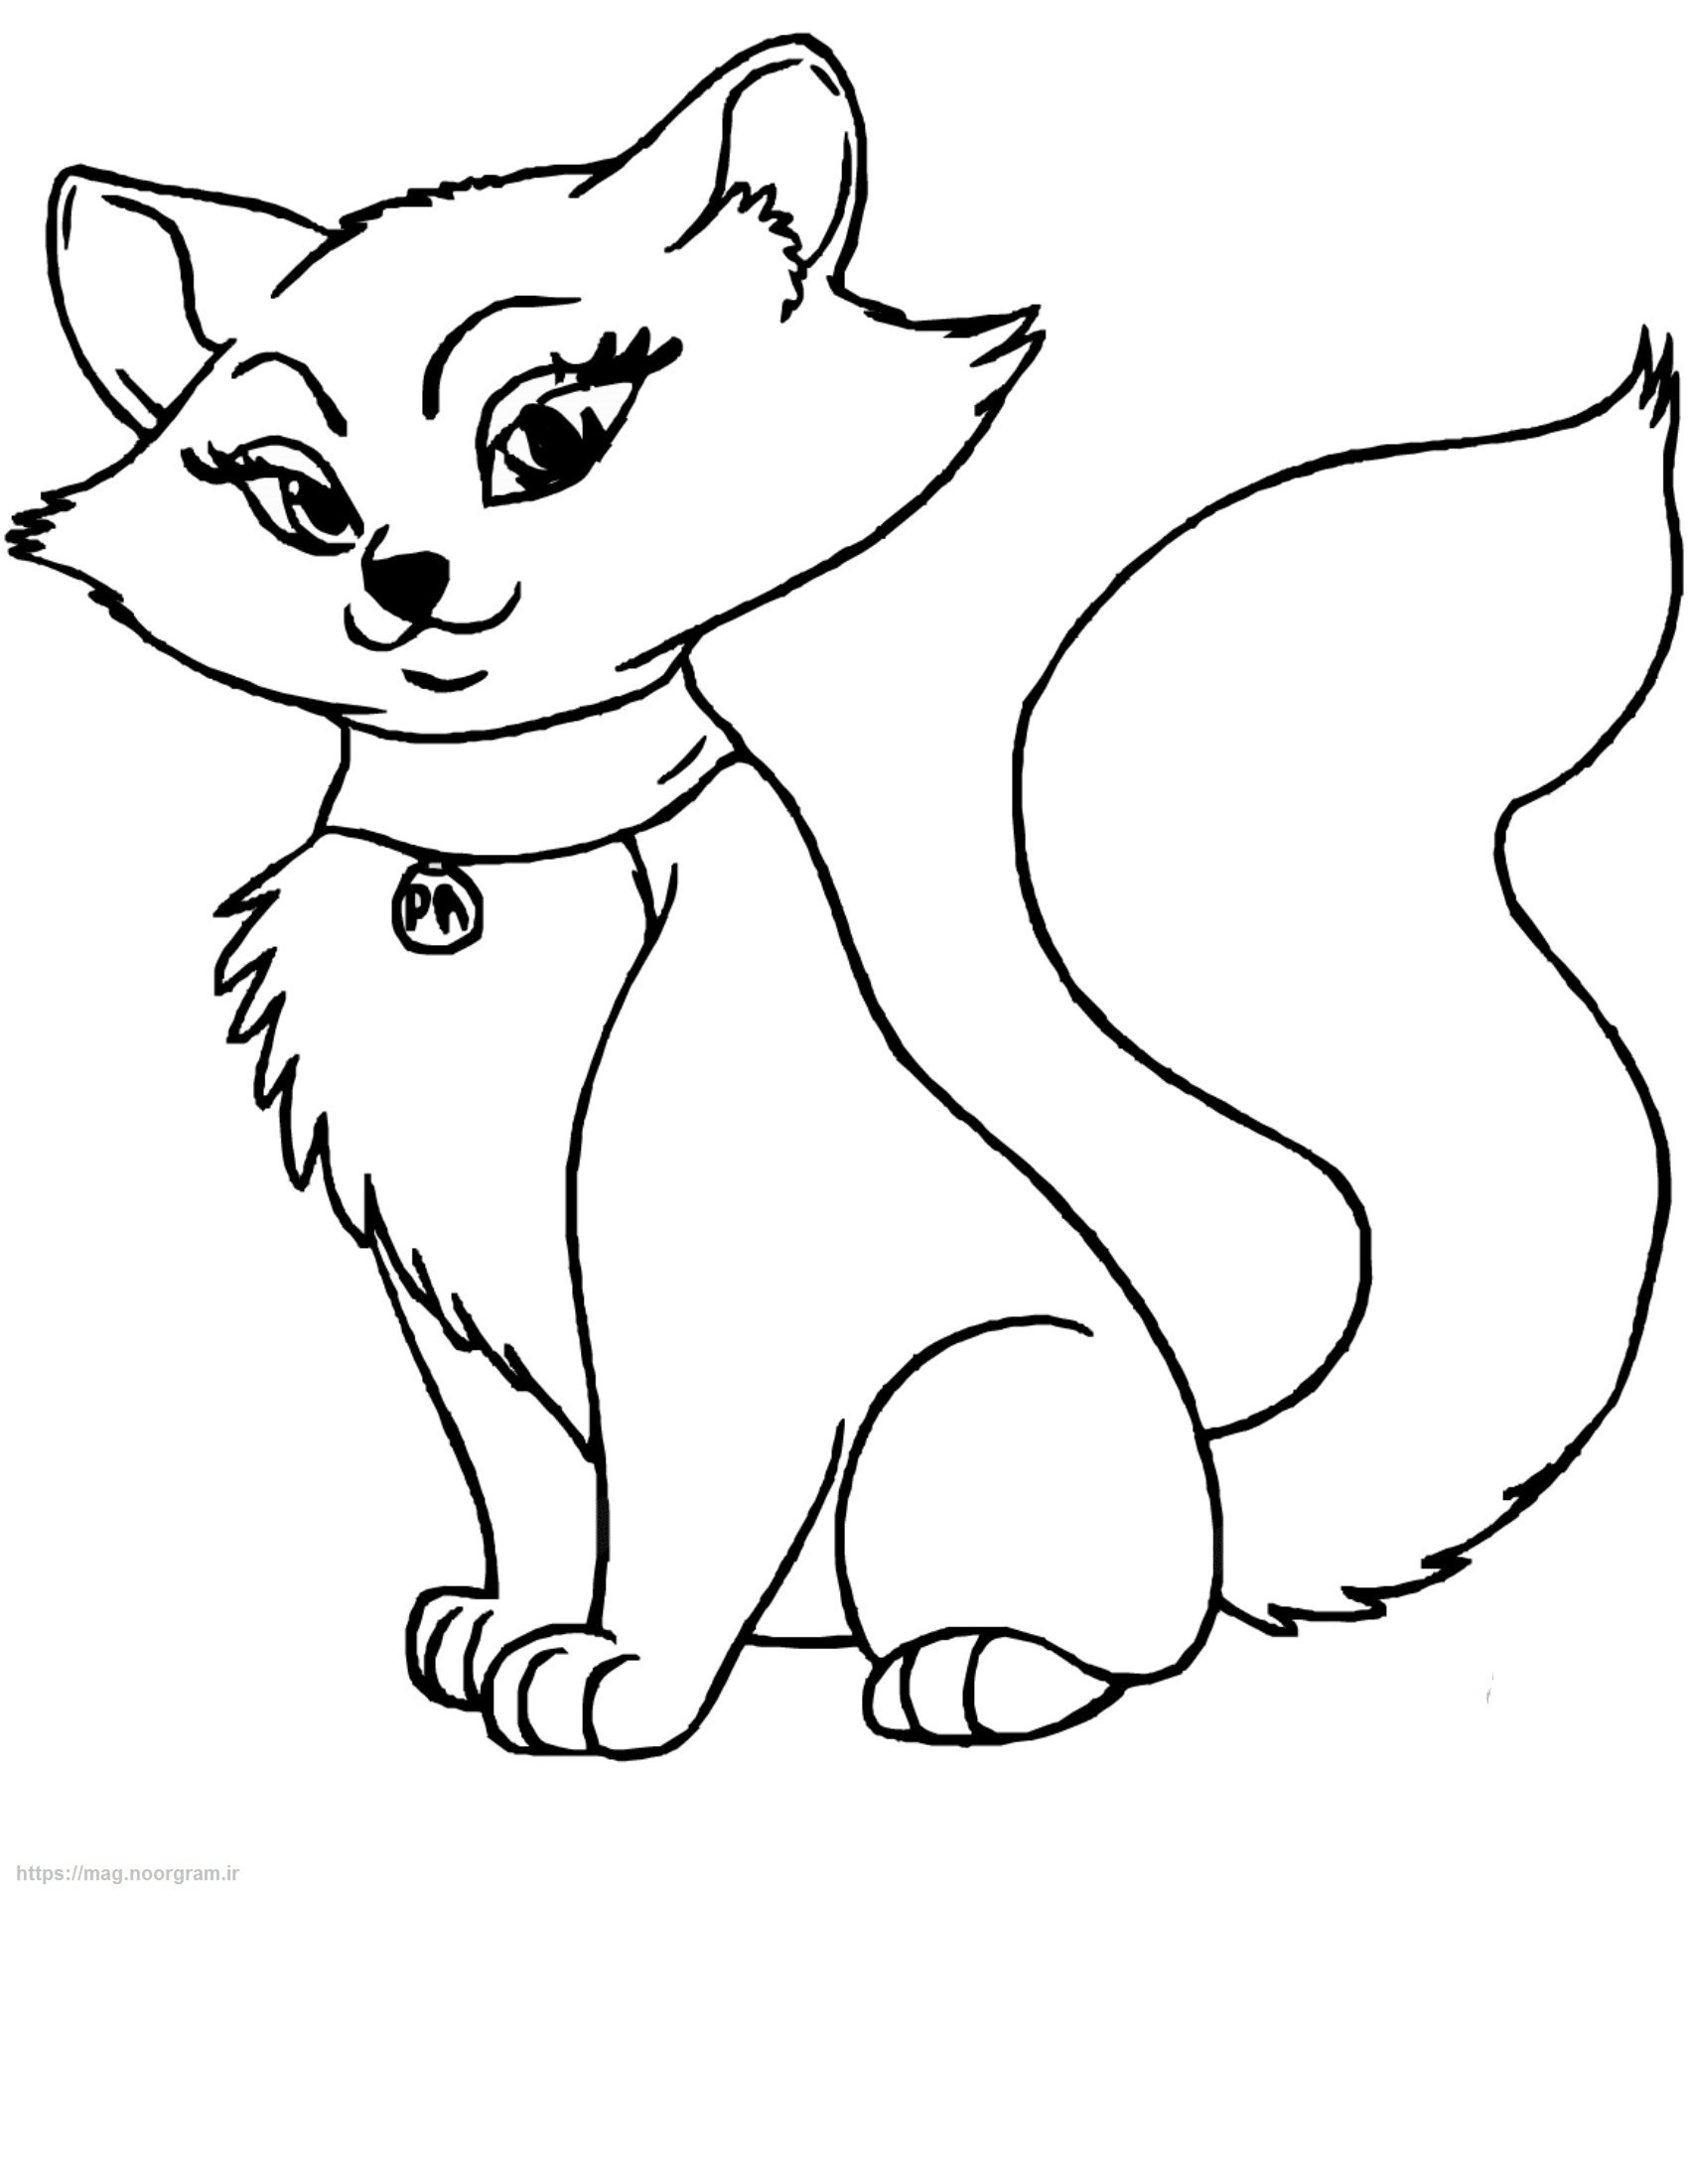 رنگ آمیزی نقاشی گربه اشرافی